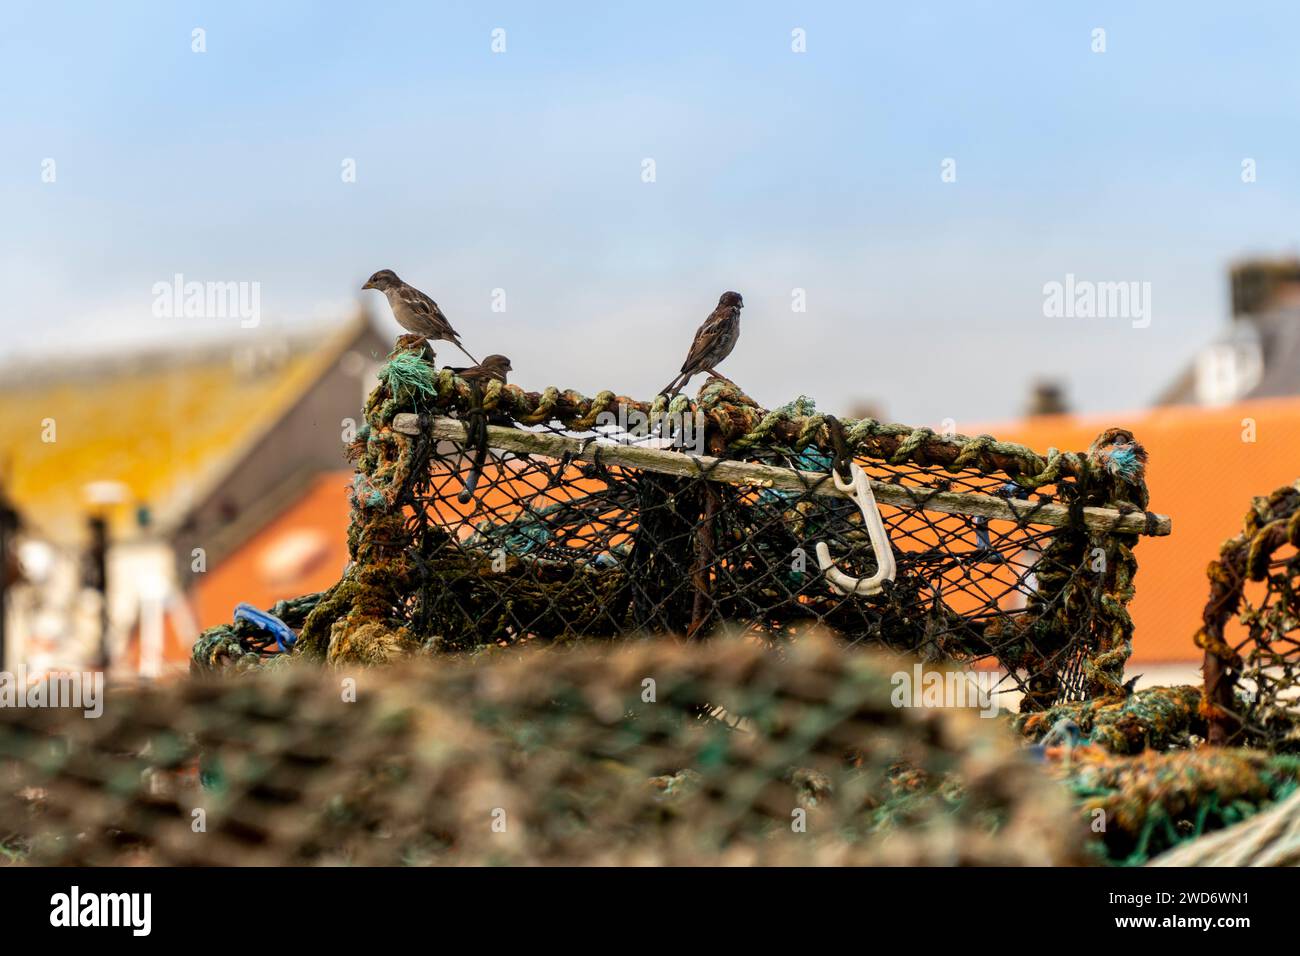 Die beiden Vögel saßen auf einem Kettennetz neben Seilen Stockfoto